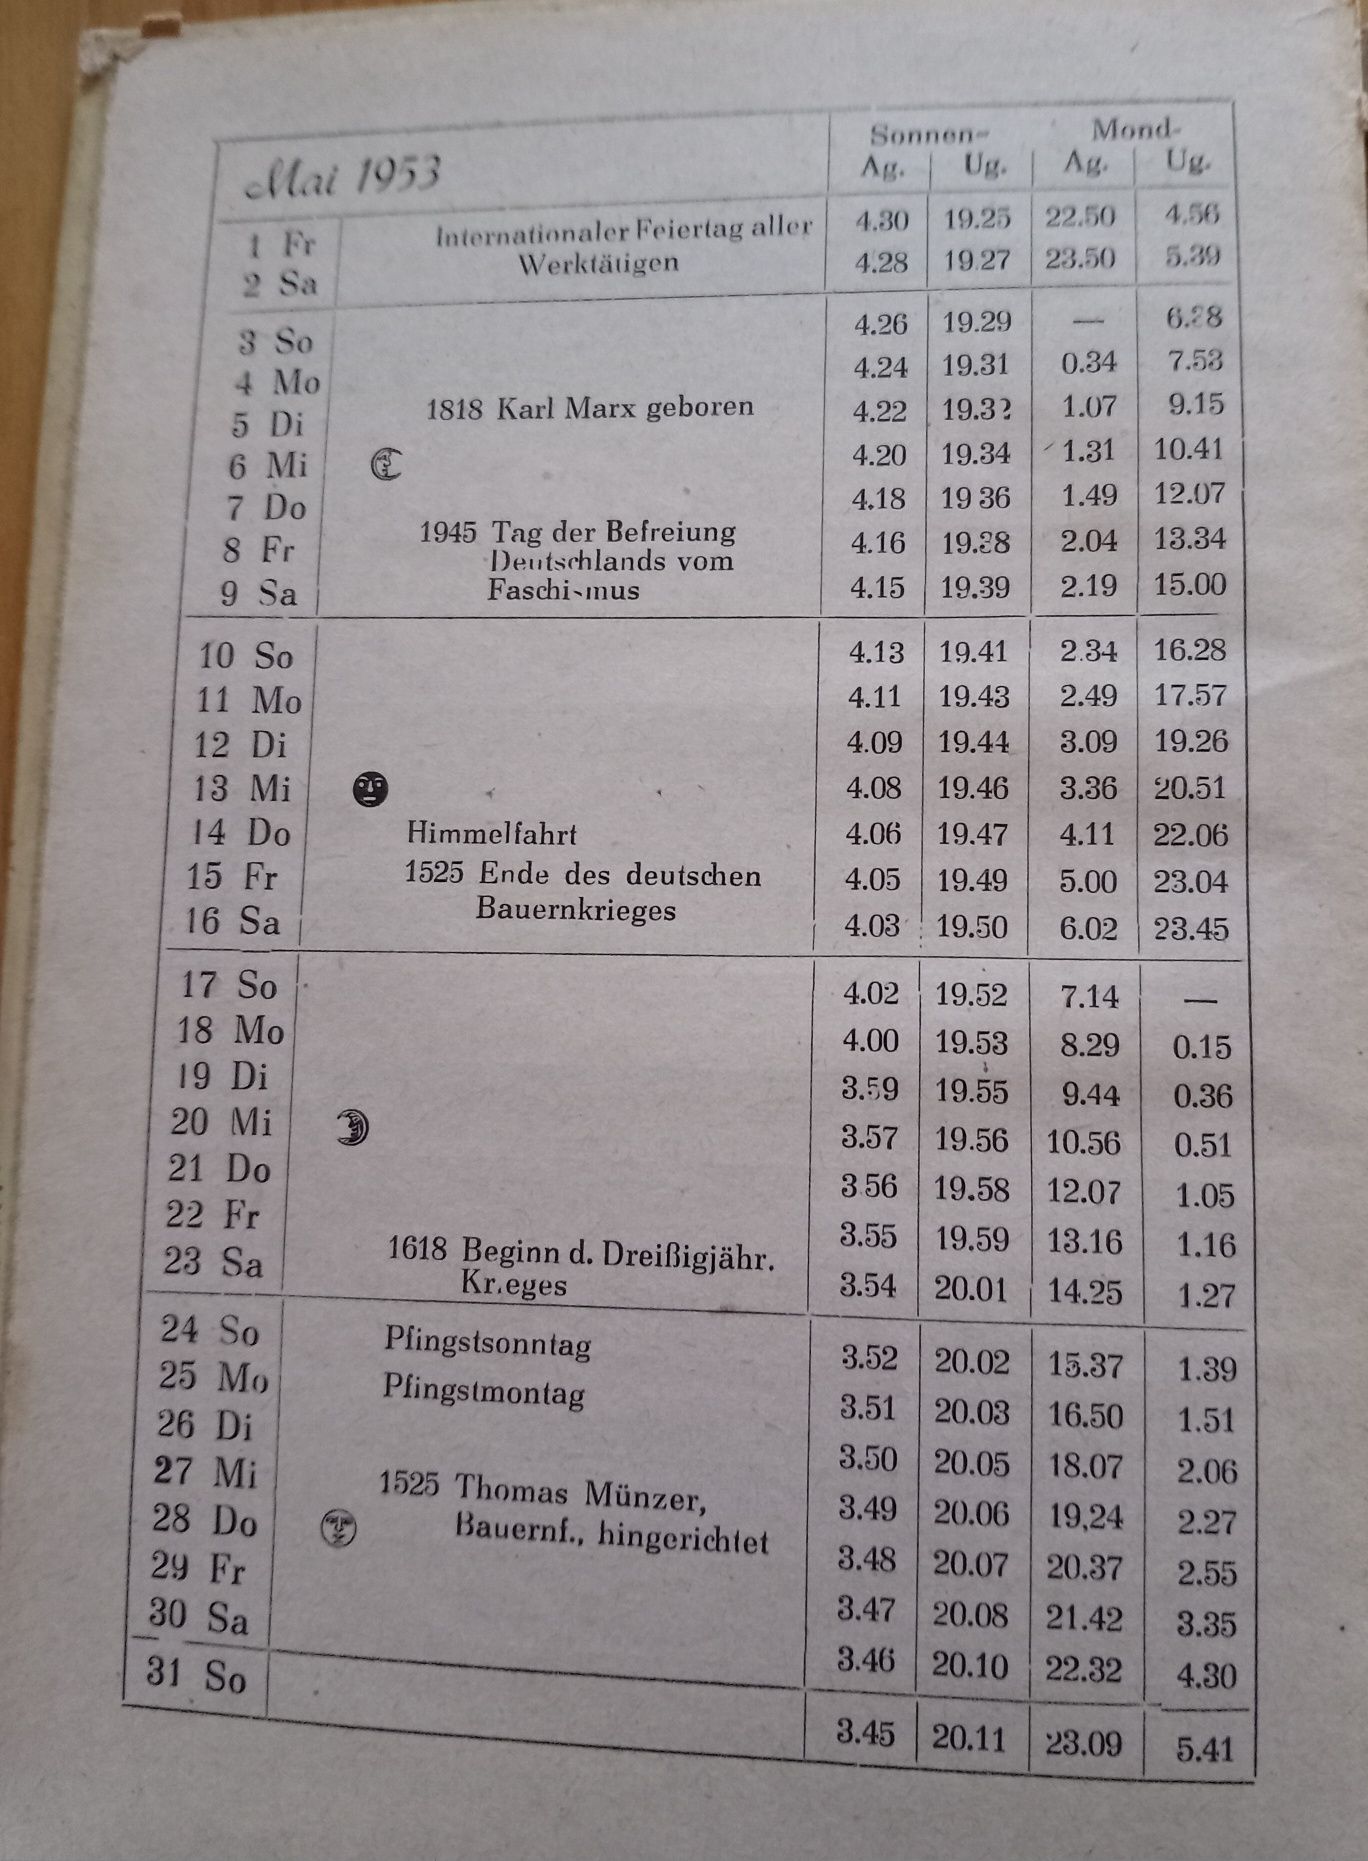 Niemiecki kalendarz wędkarski DDR  z 1953